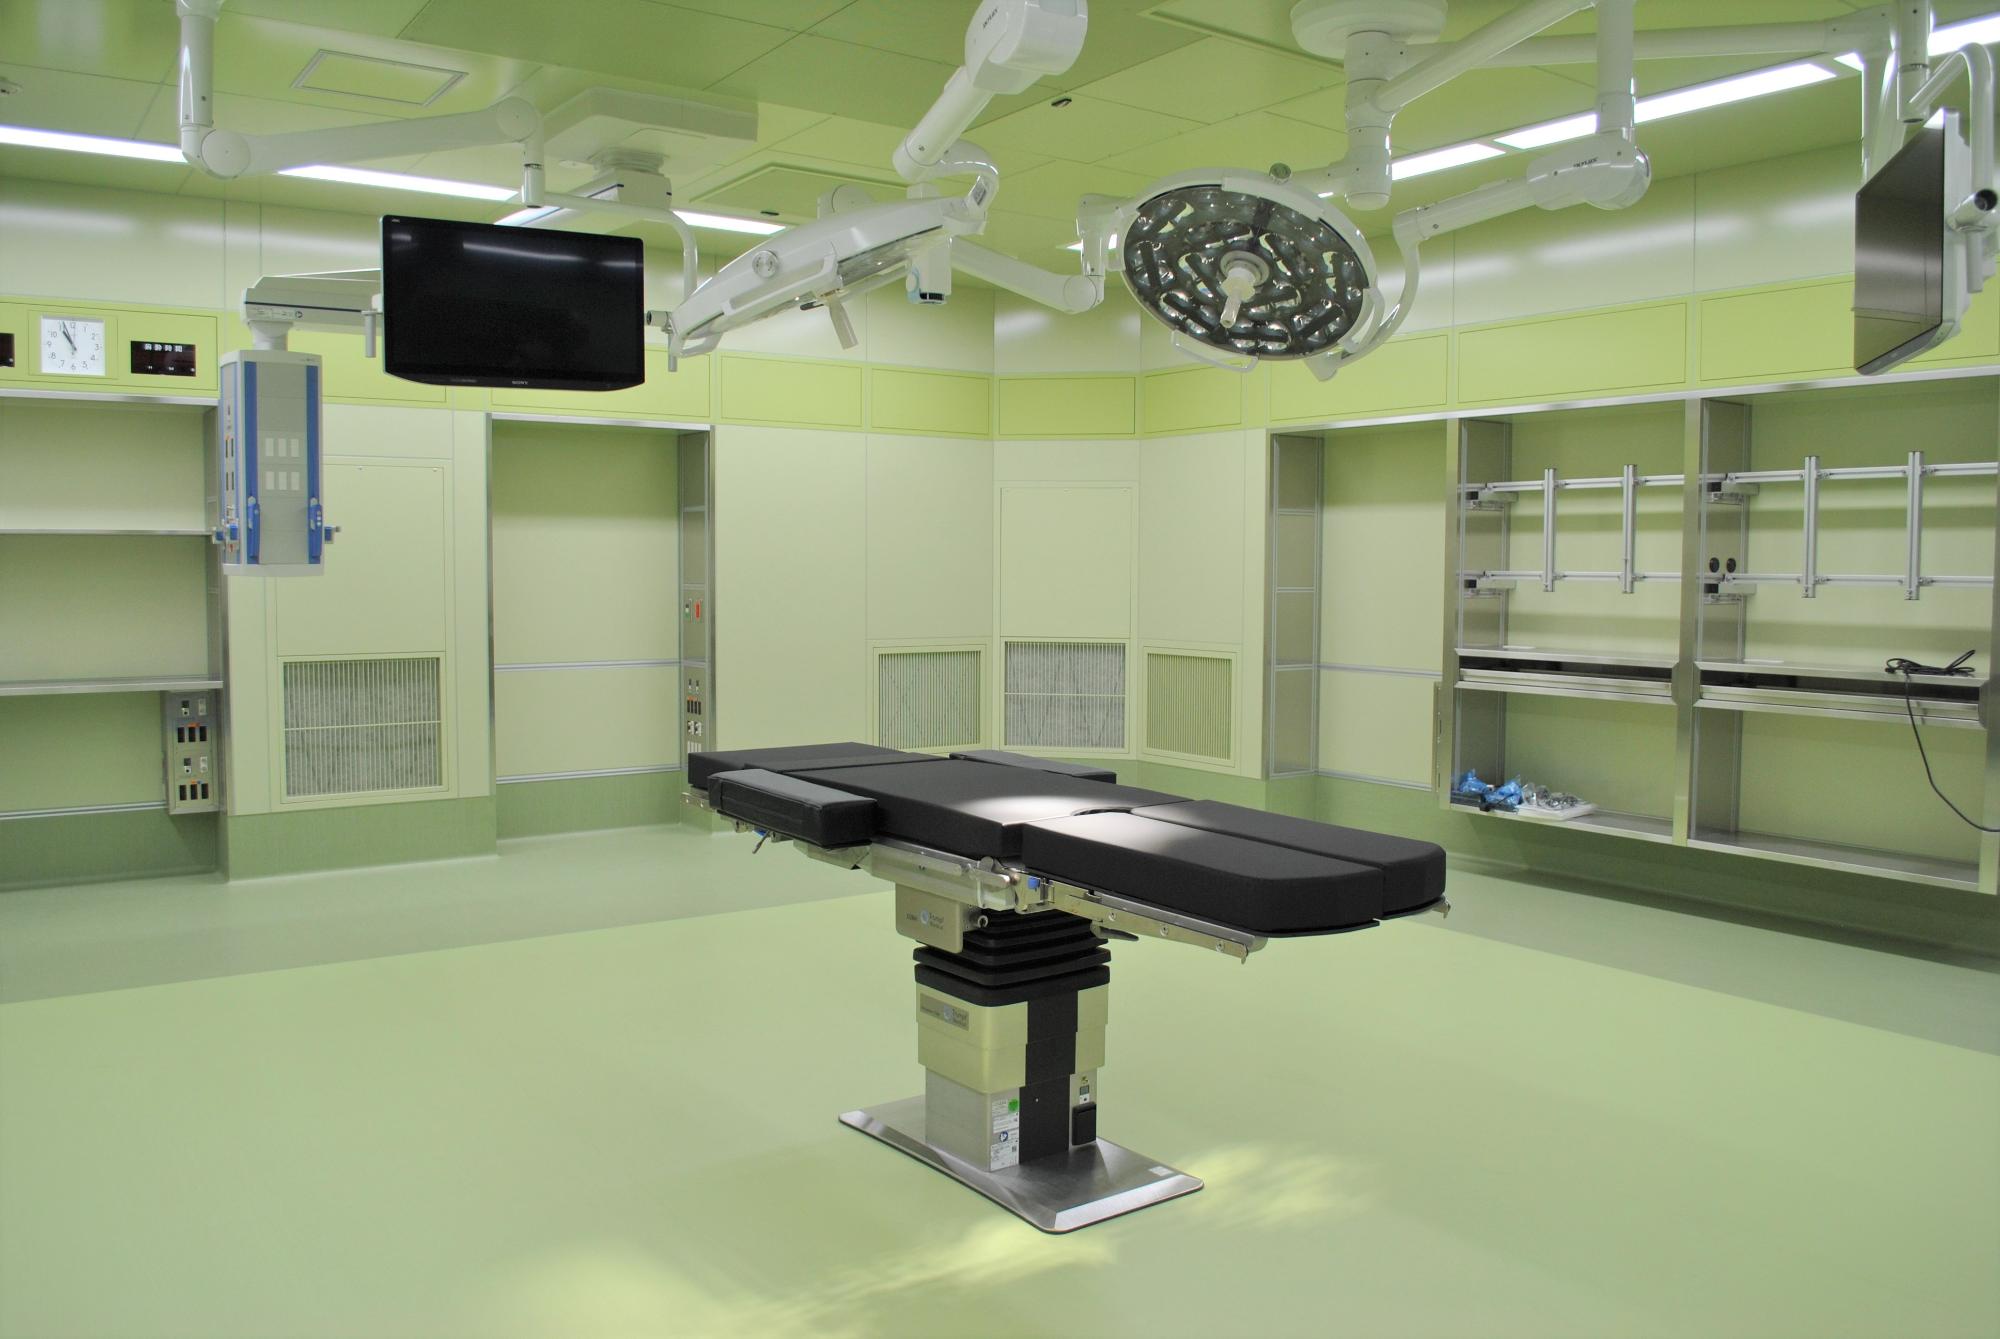 増築した手術室